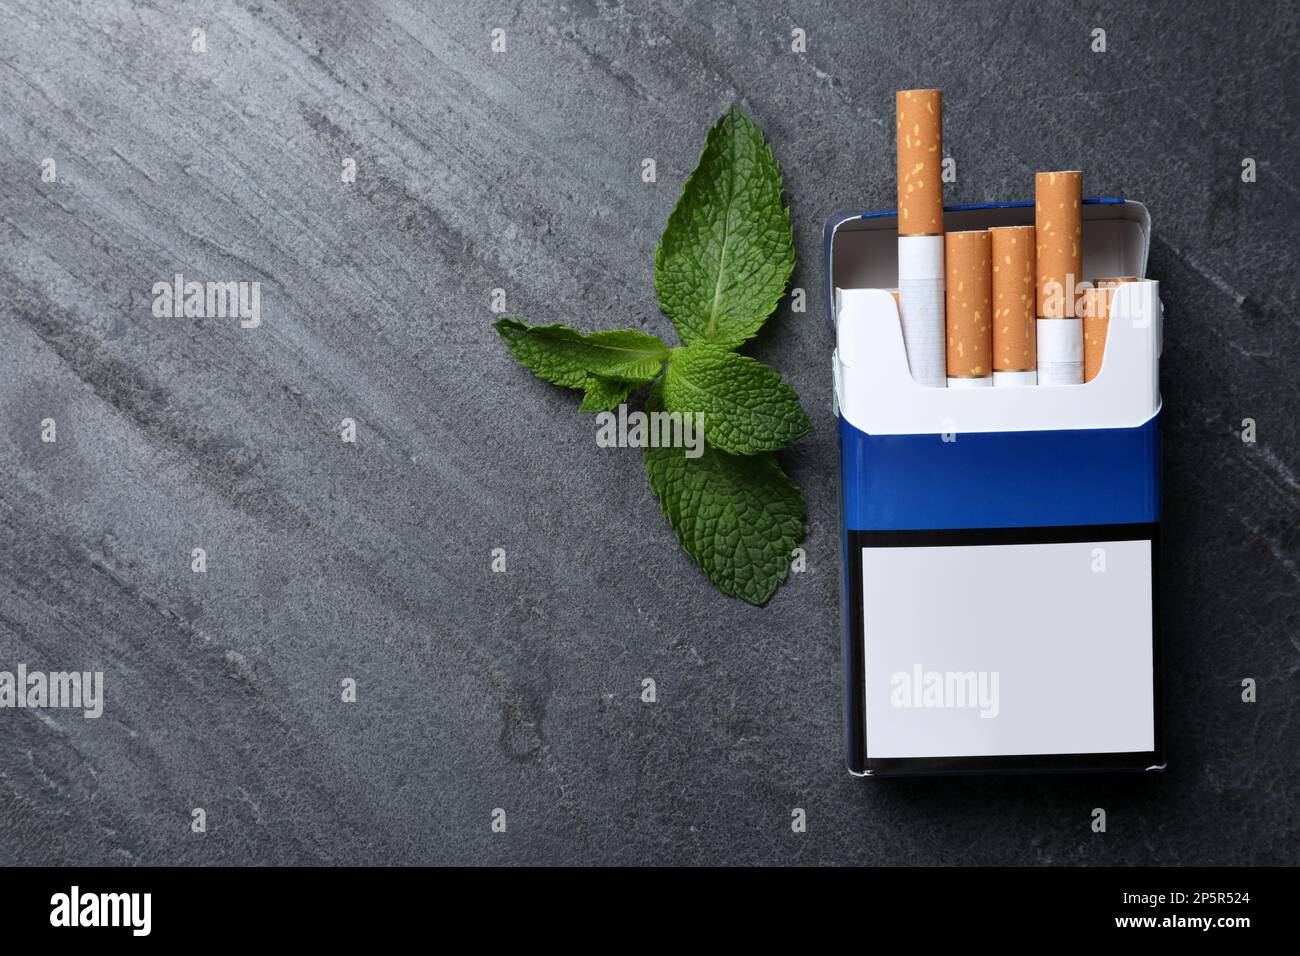 Paquet de cigarettes de menthol et de menthe sur table grise, plat. Espace pour le texte Banque D'Images